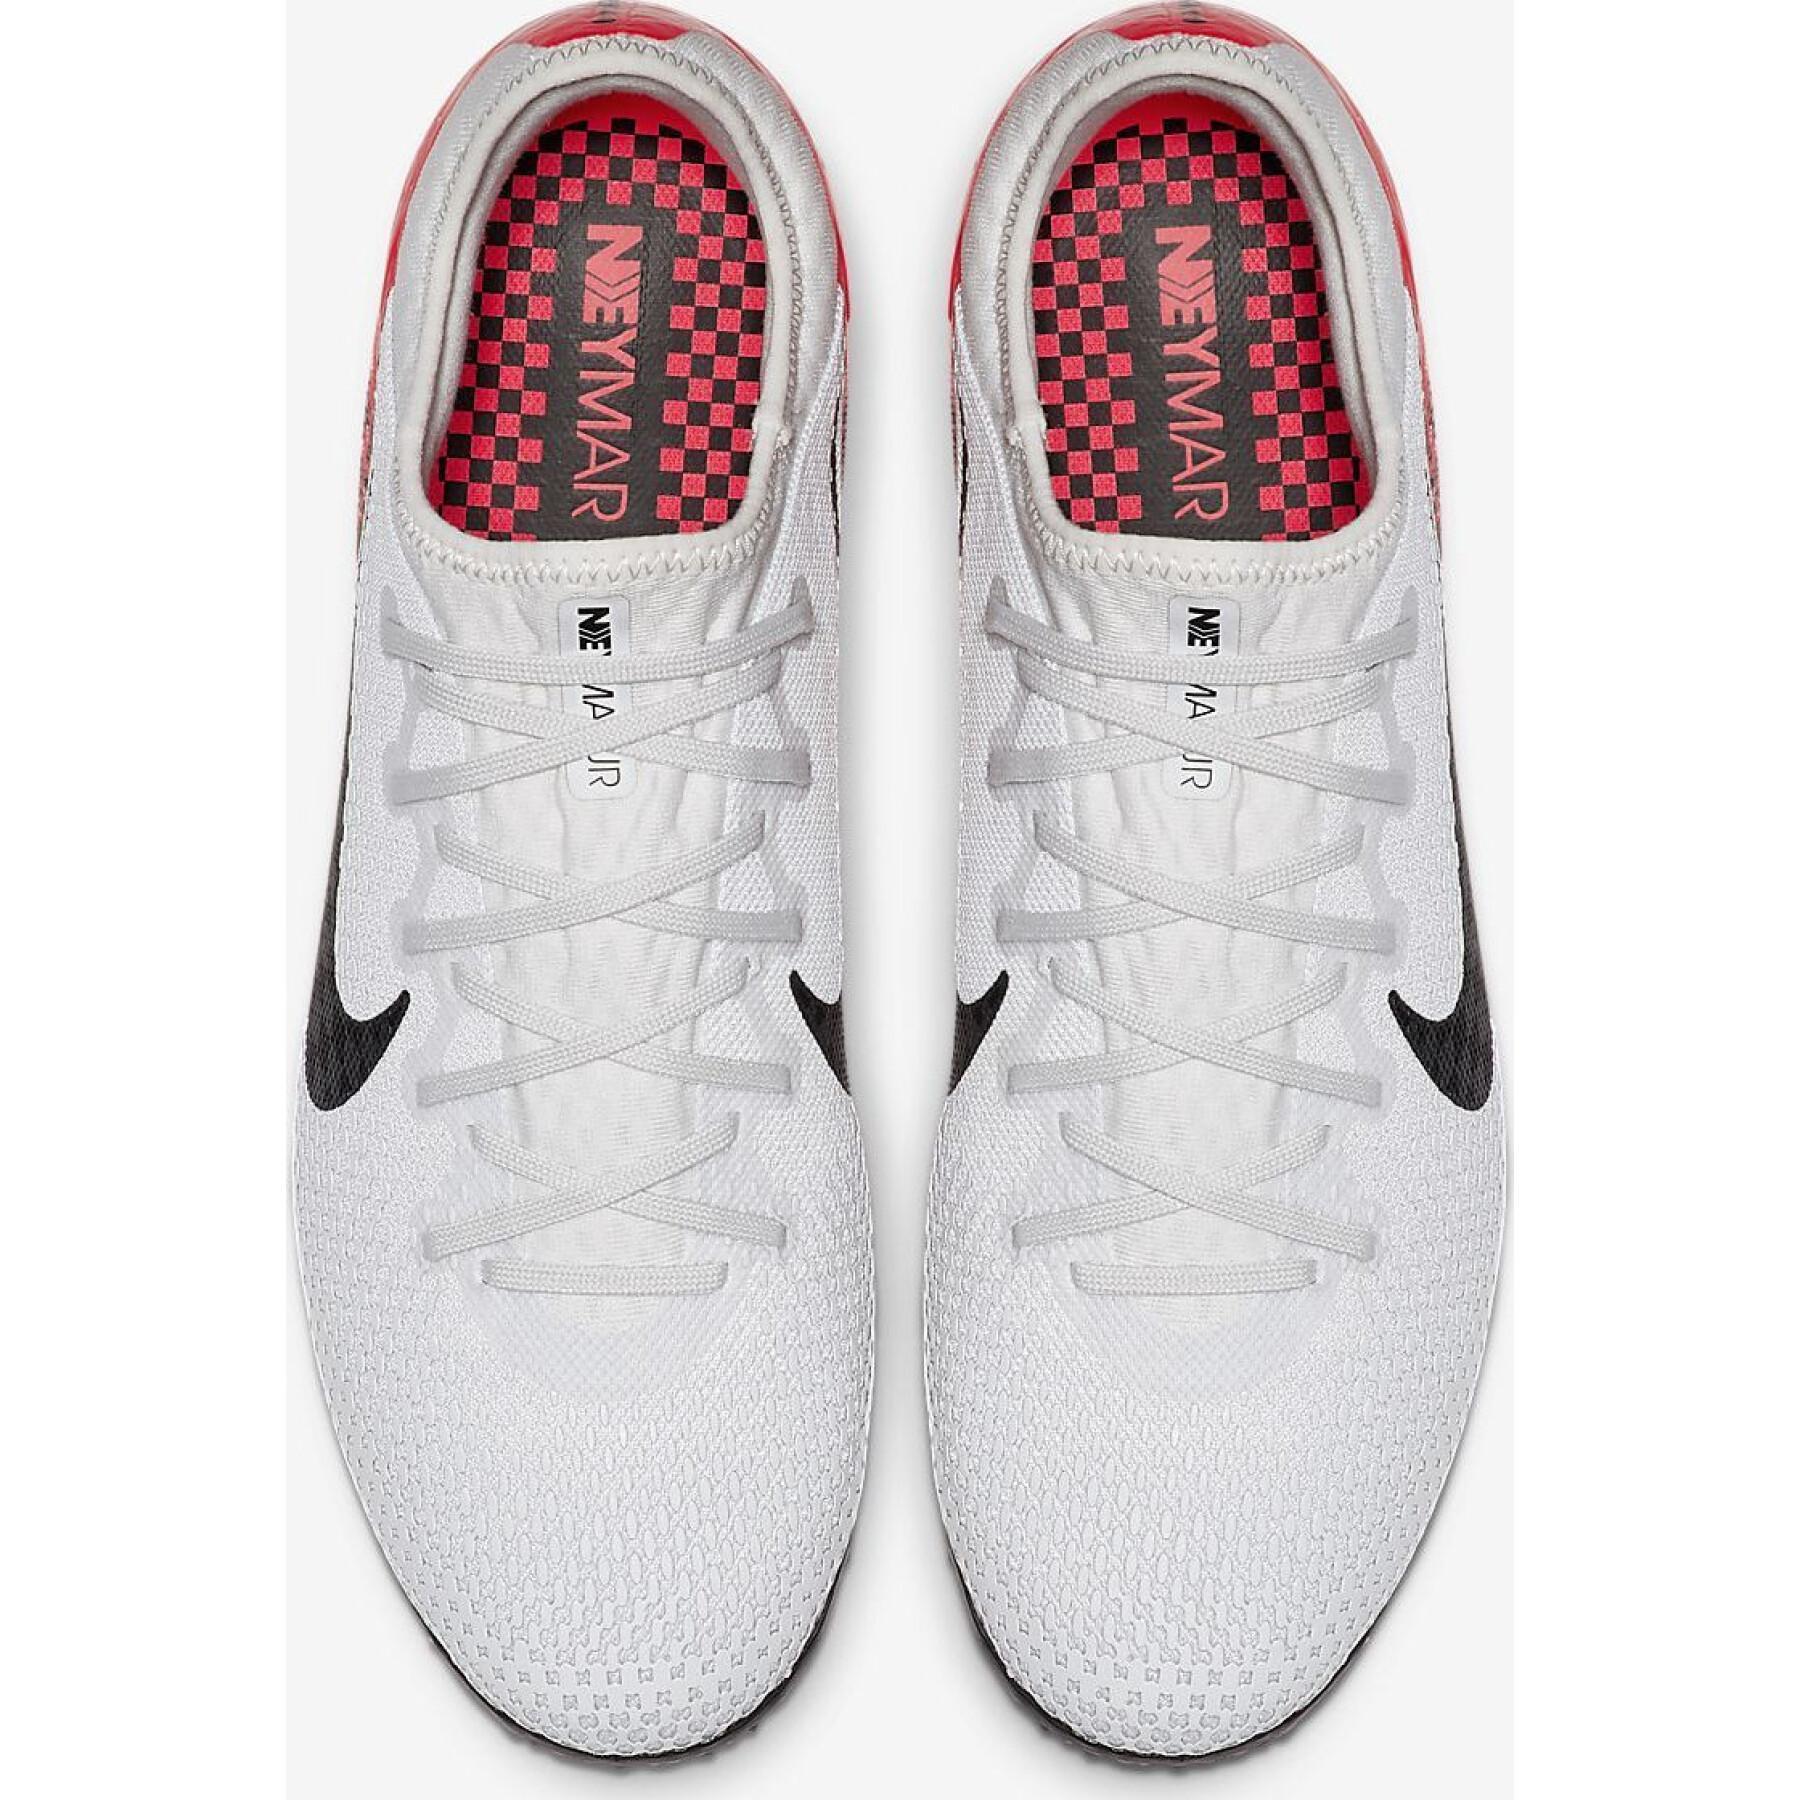 Shoes Nike Mercurial Vapor 13 Pro N TF